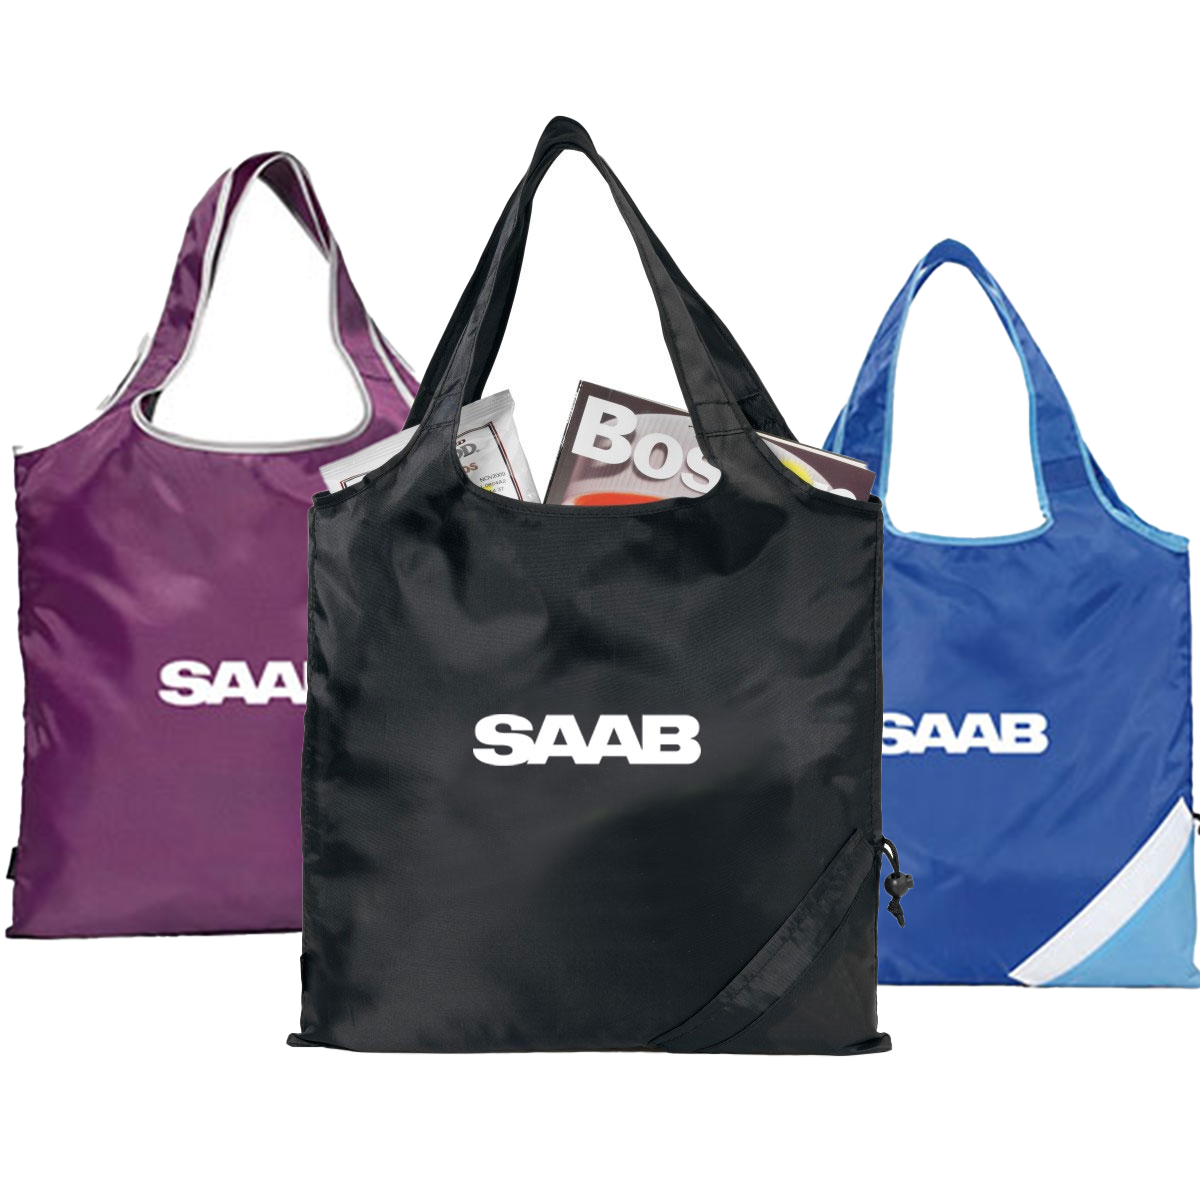 Saab Bag